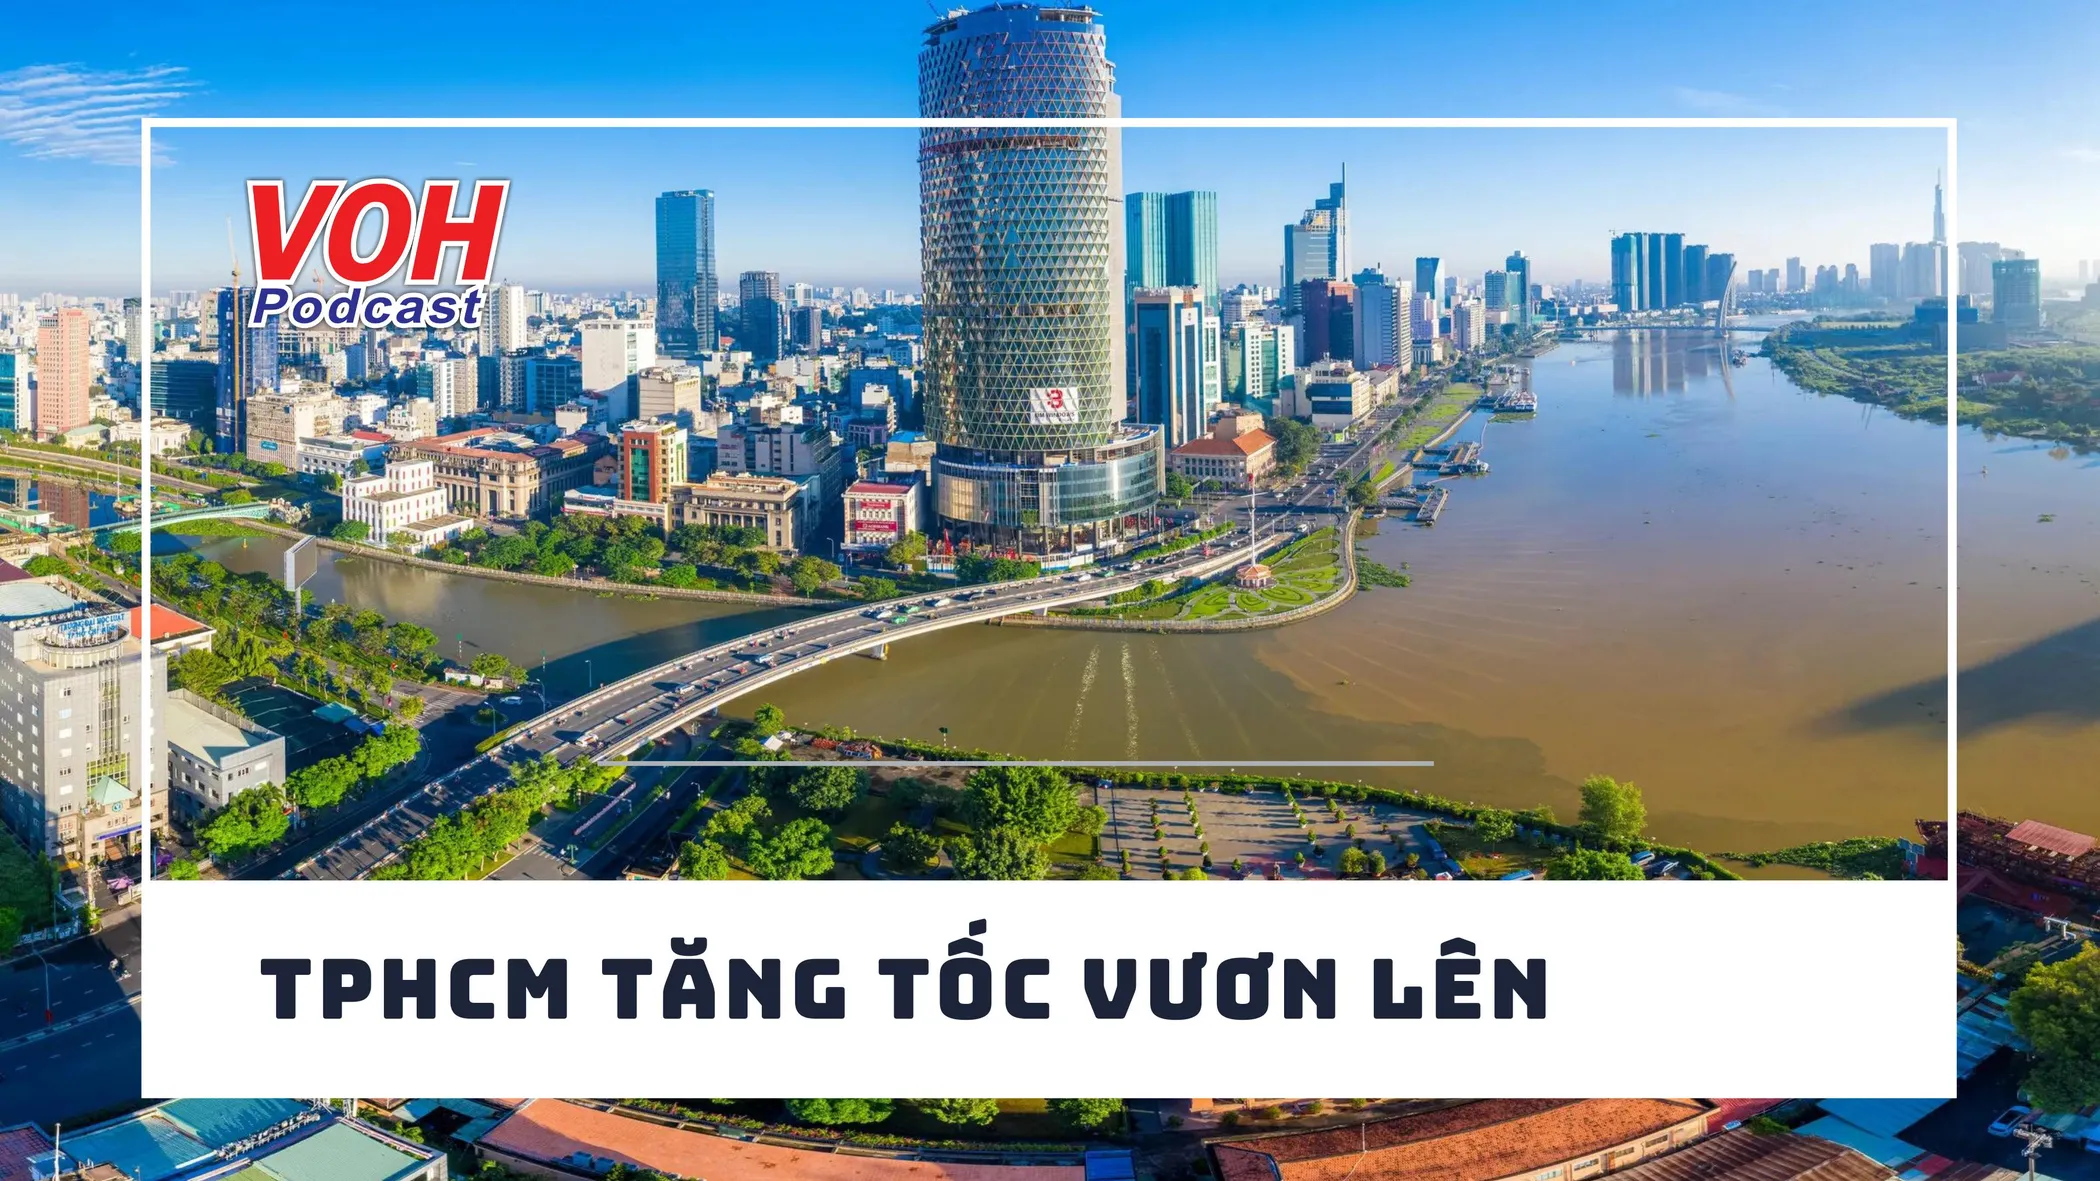 TPHCM phát triển đô thị đa trung tâm theo cơ chế mới